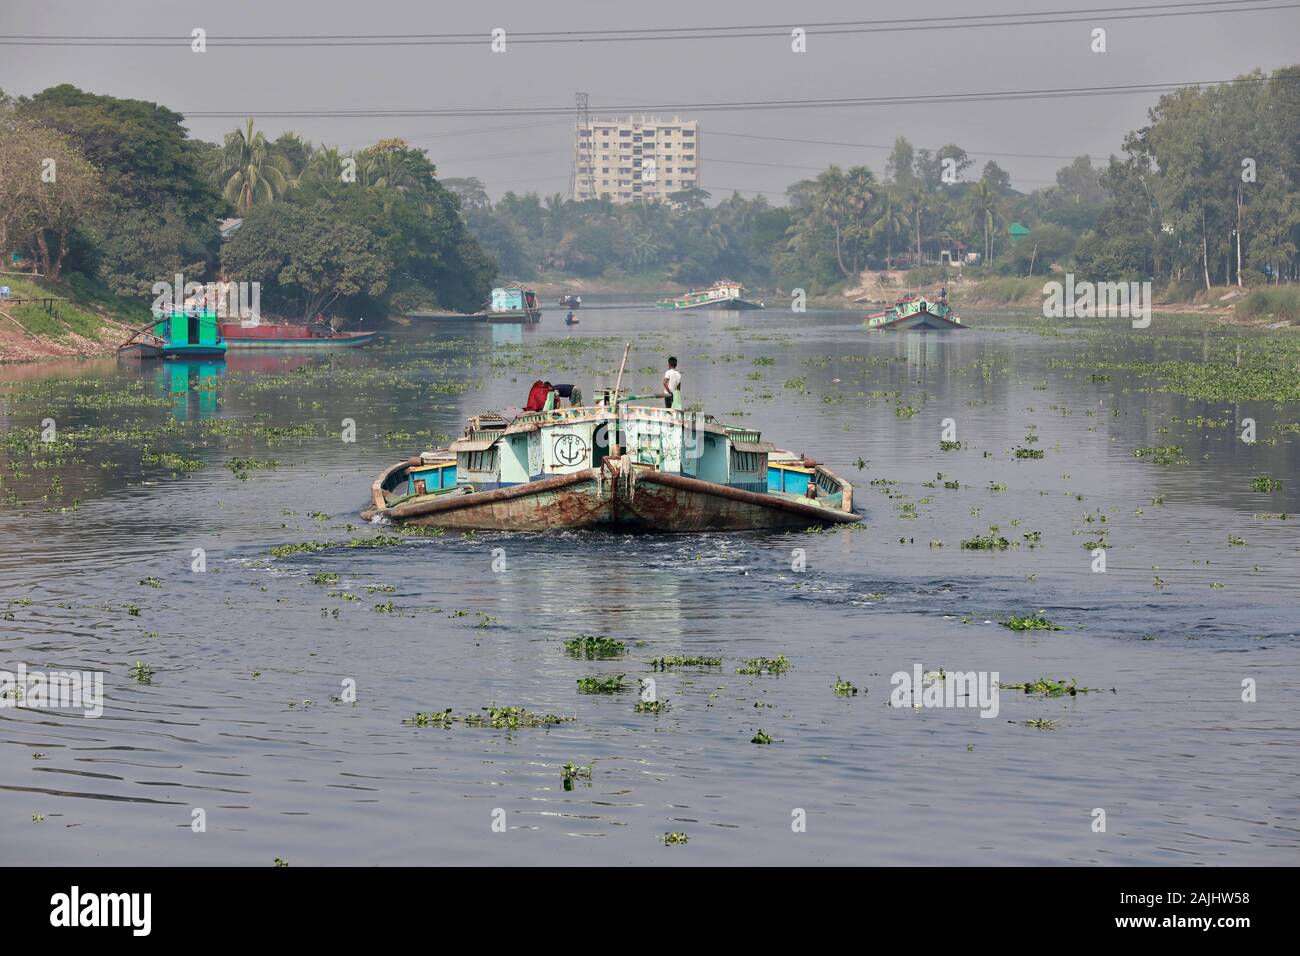 Dhaka, Bangladesh - 01 janvier 2020 : un bateau se déplace sur la rivière Balu à Dhaka, au Bangladesh. Comme les autres rivières, Dhaka est devenu extrêmement polluée être Banque D'Images